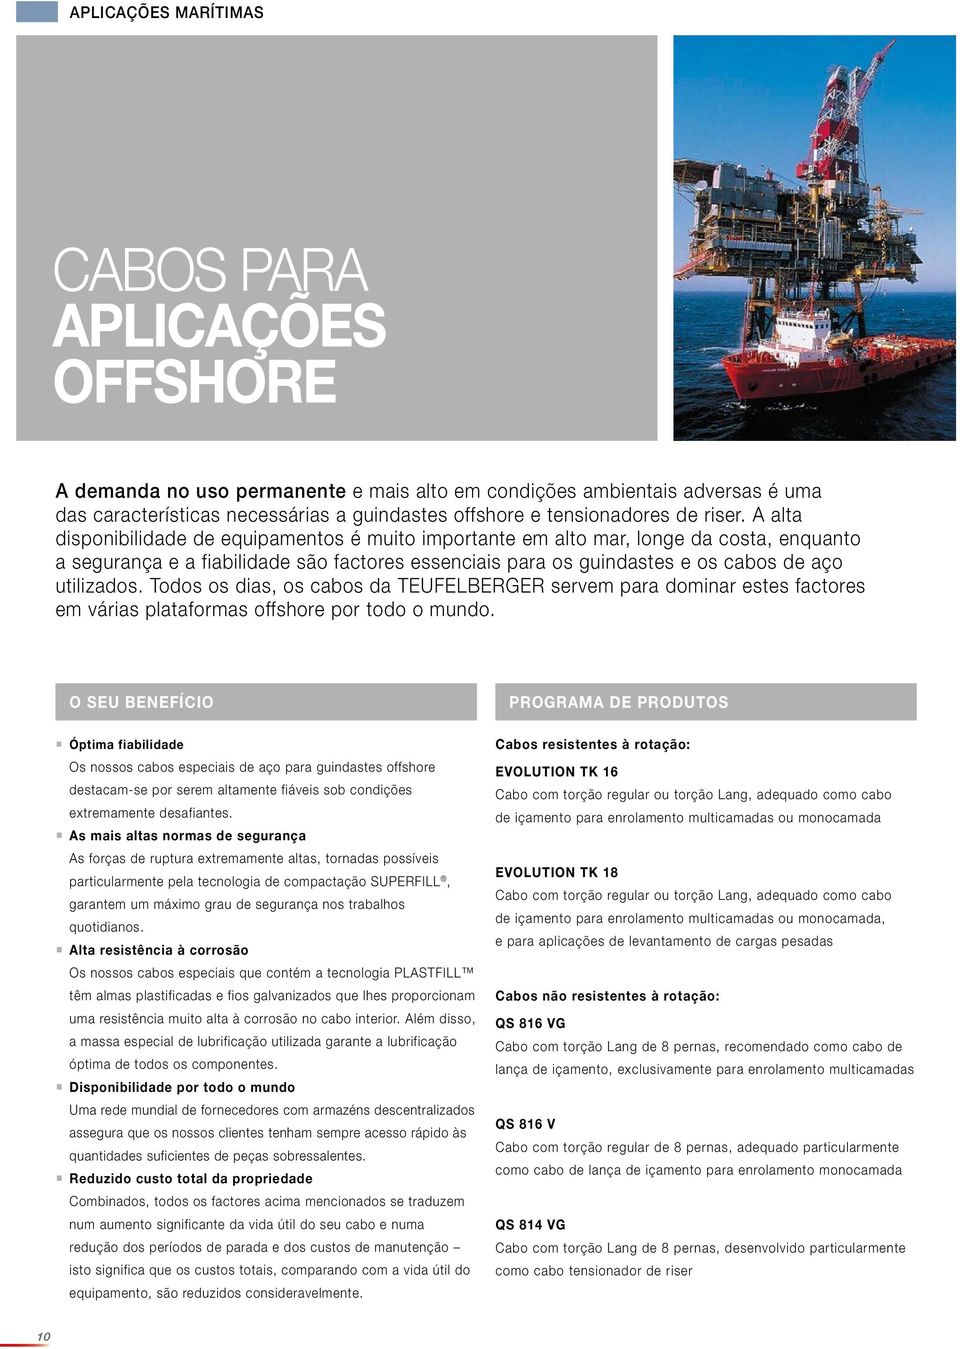 A alta disponibilidade de equipamentos é muito importante em alto mar, longe da costa, enquanto a segurança e a fiabilidade são factores essenciais para os guindastes e os cabos de aço utilizados.